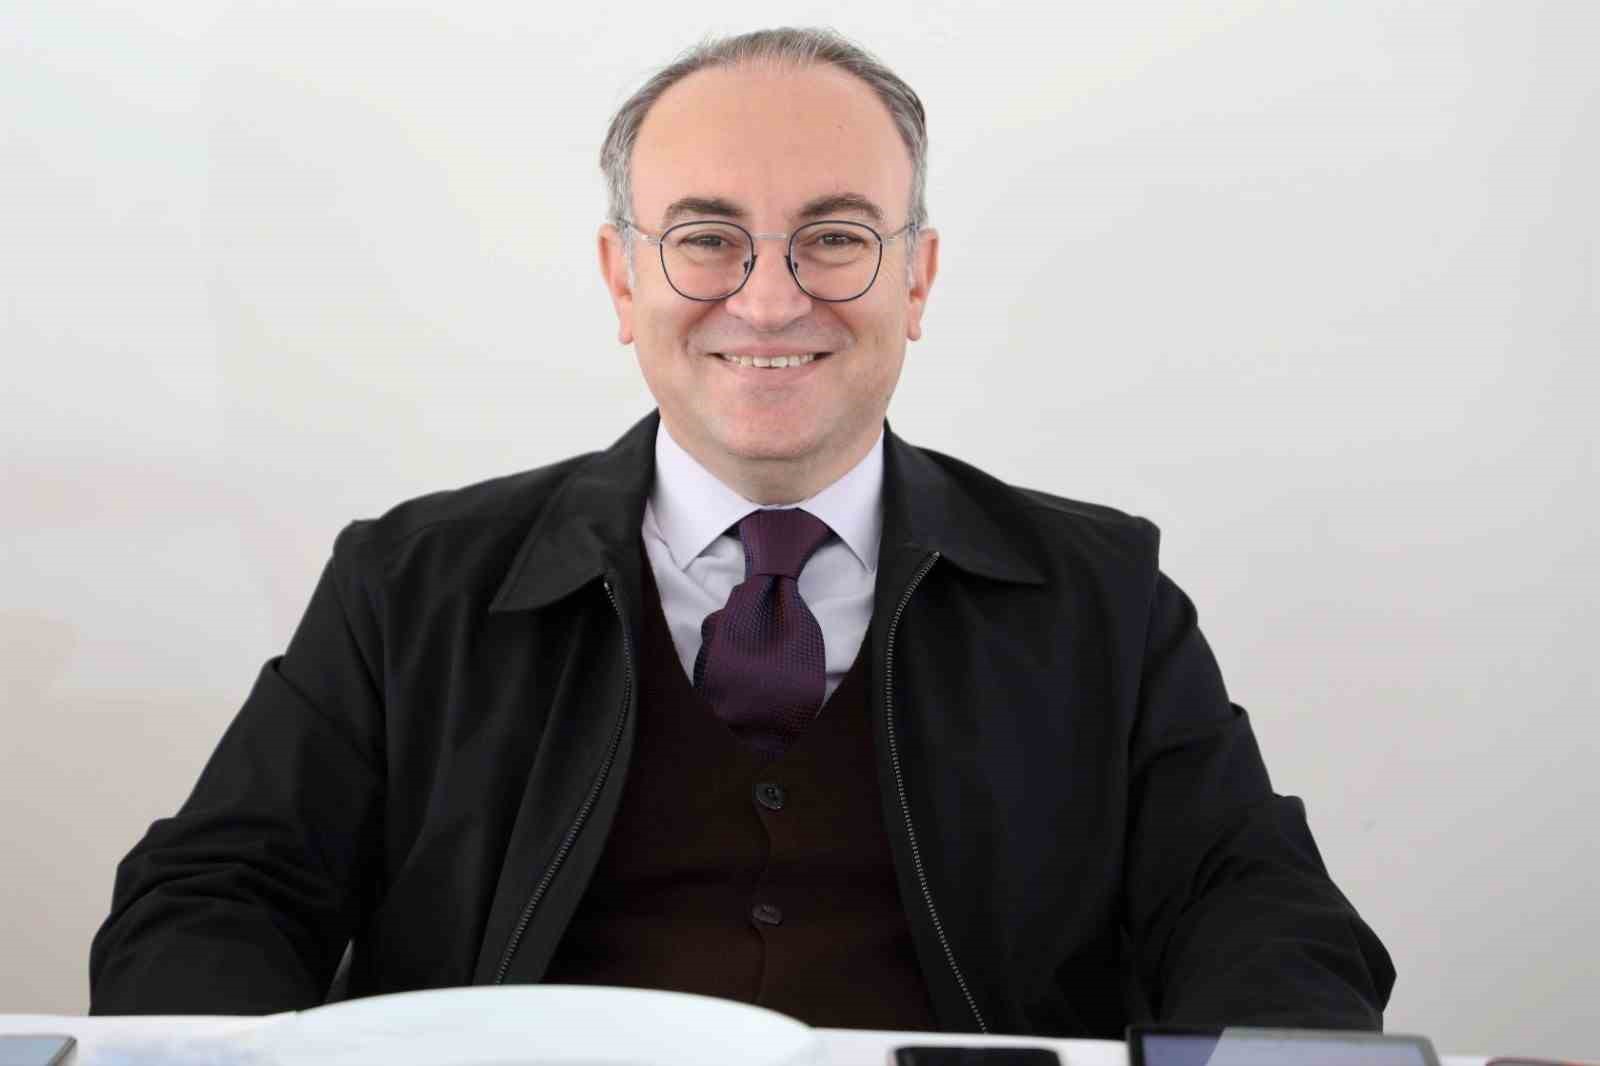 Bozok Üniversitesi Rektörü Prof. Dr. Yaşar, “Doktor kadrosunu artırmak için çaba sarf ediyoruz”